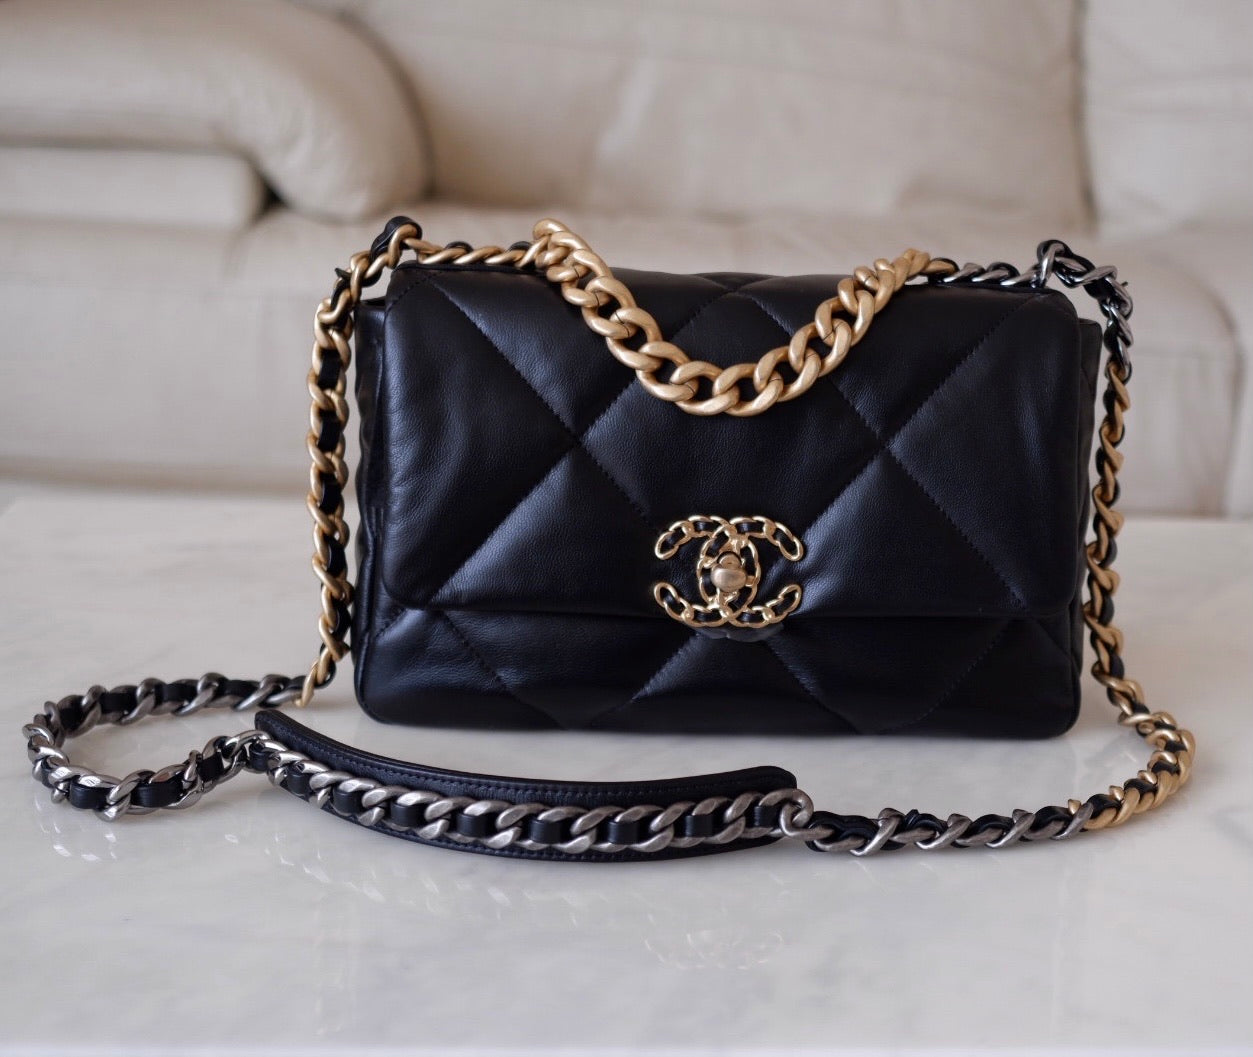 Chanel 19 Bag Black - 182 For Sale on 1stDibs  chanel 19 black bag, chanel  19 medium black, chanel 19 handbag black